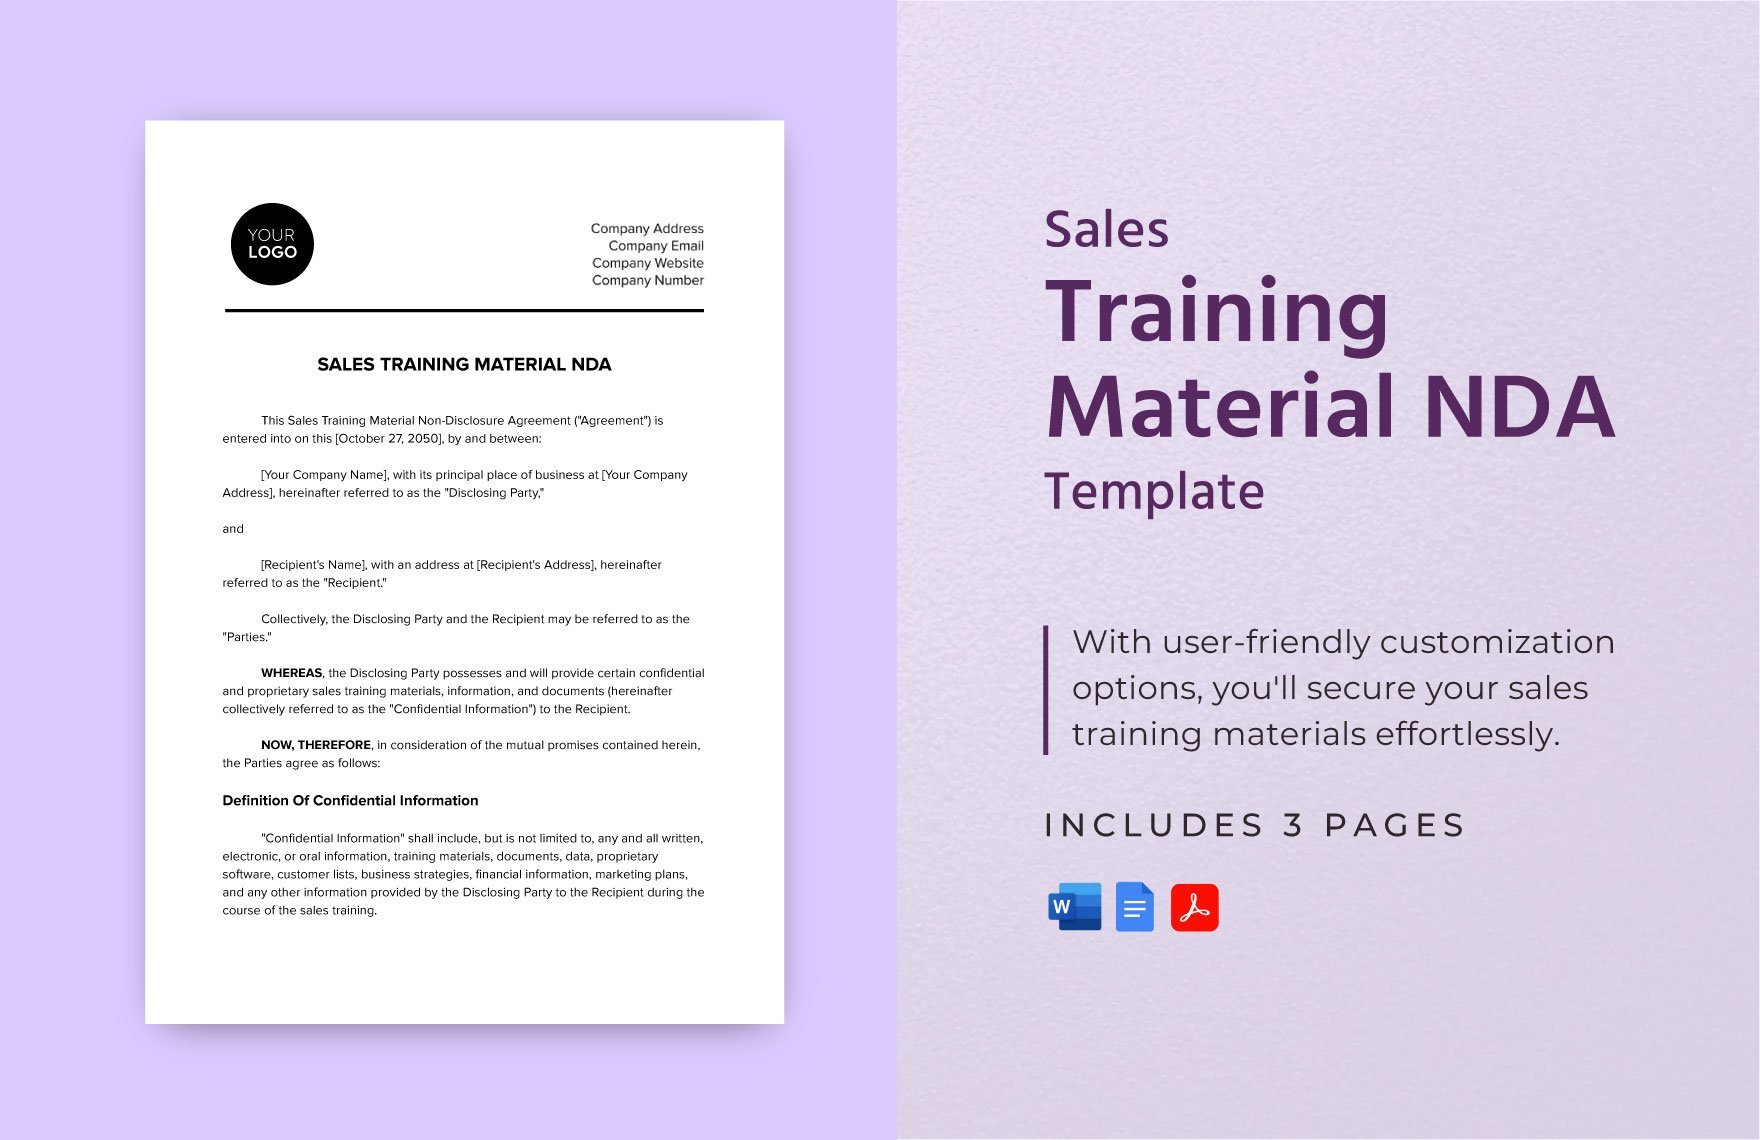 Sales Training Material NDA Template